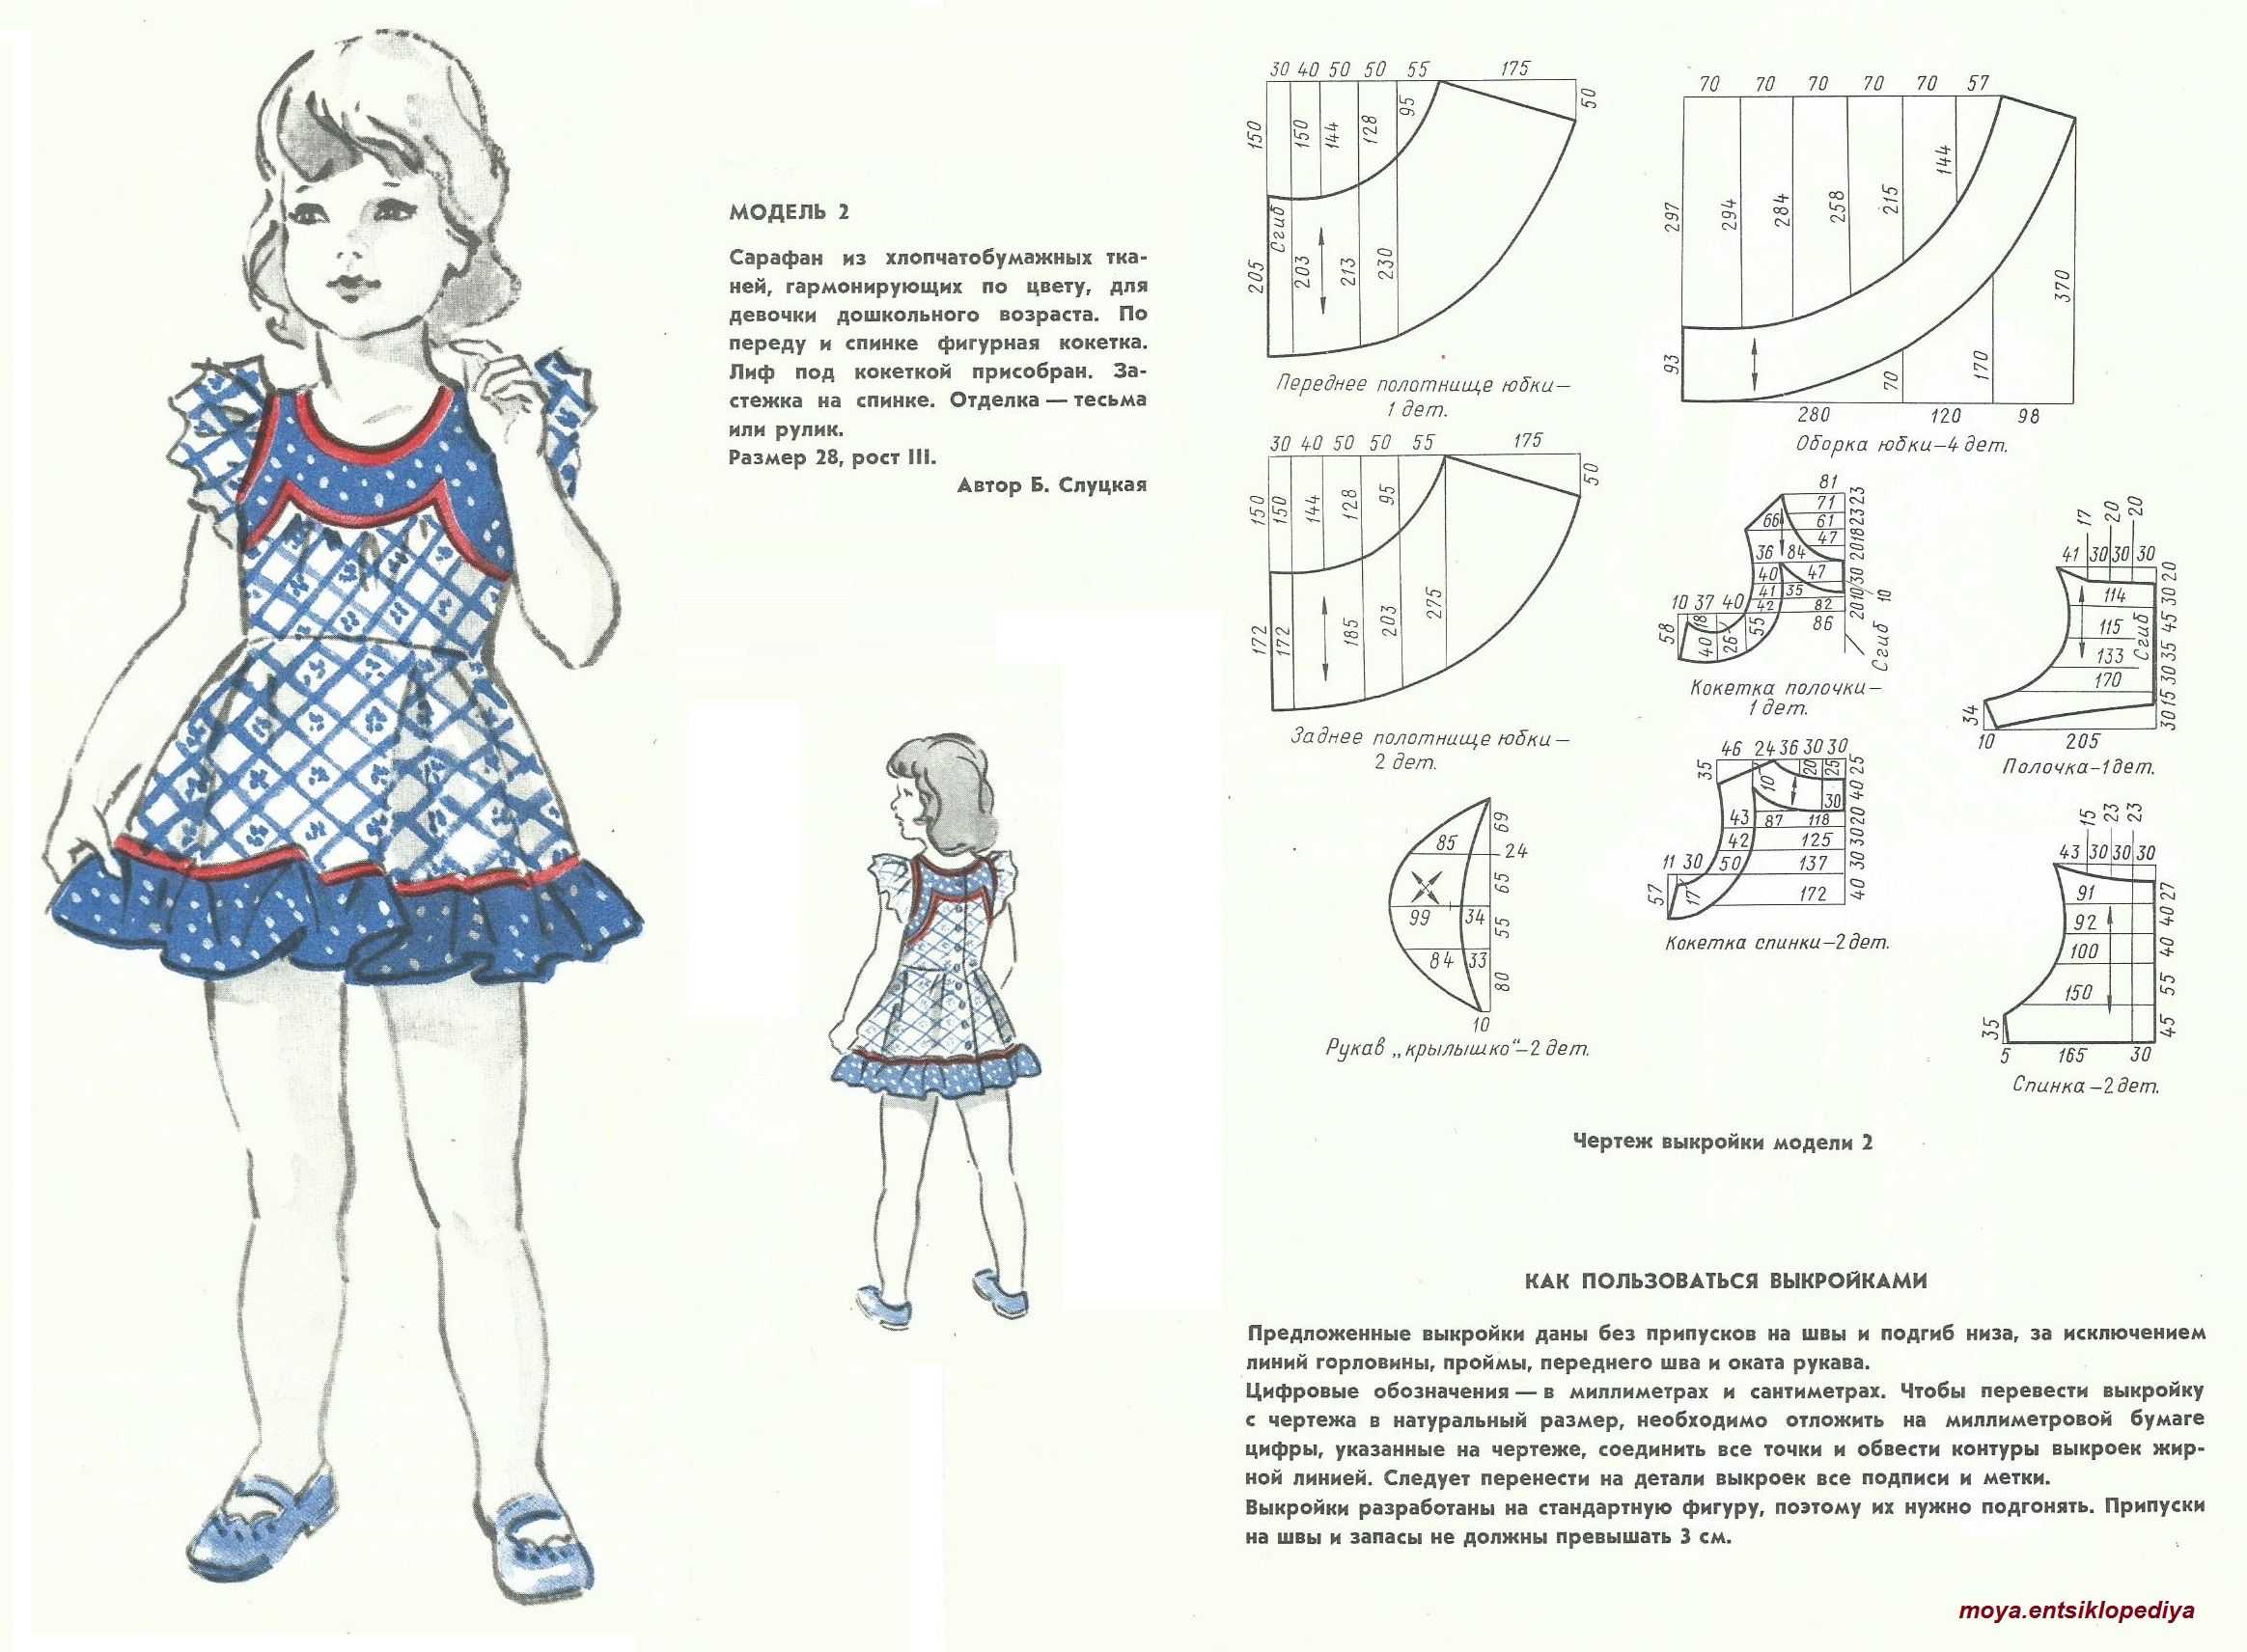 Выкройка платья для девочки 10 лет, пошаговове описание пошива, видео мк, 7 моделей